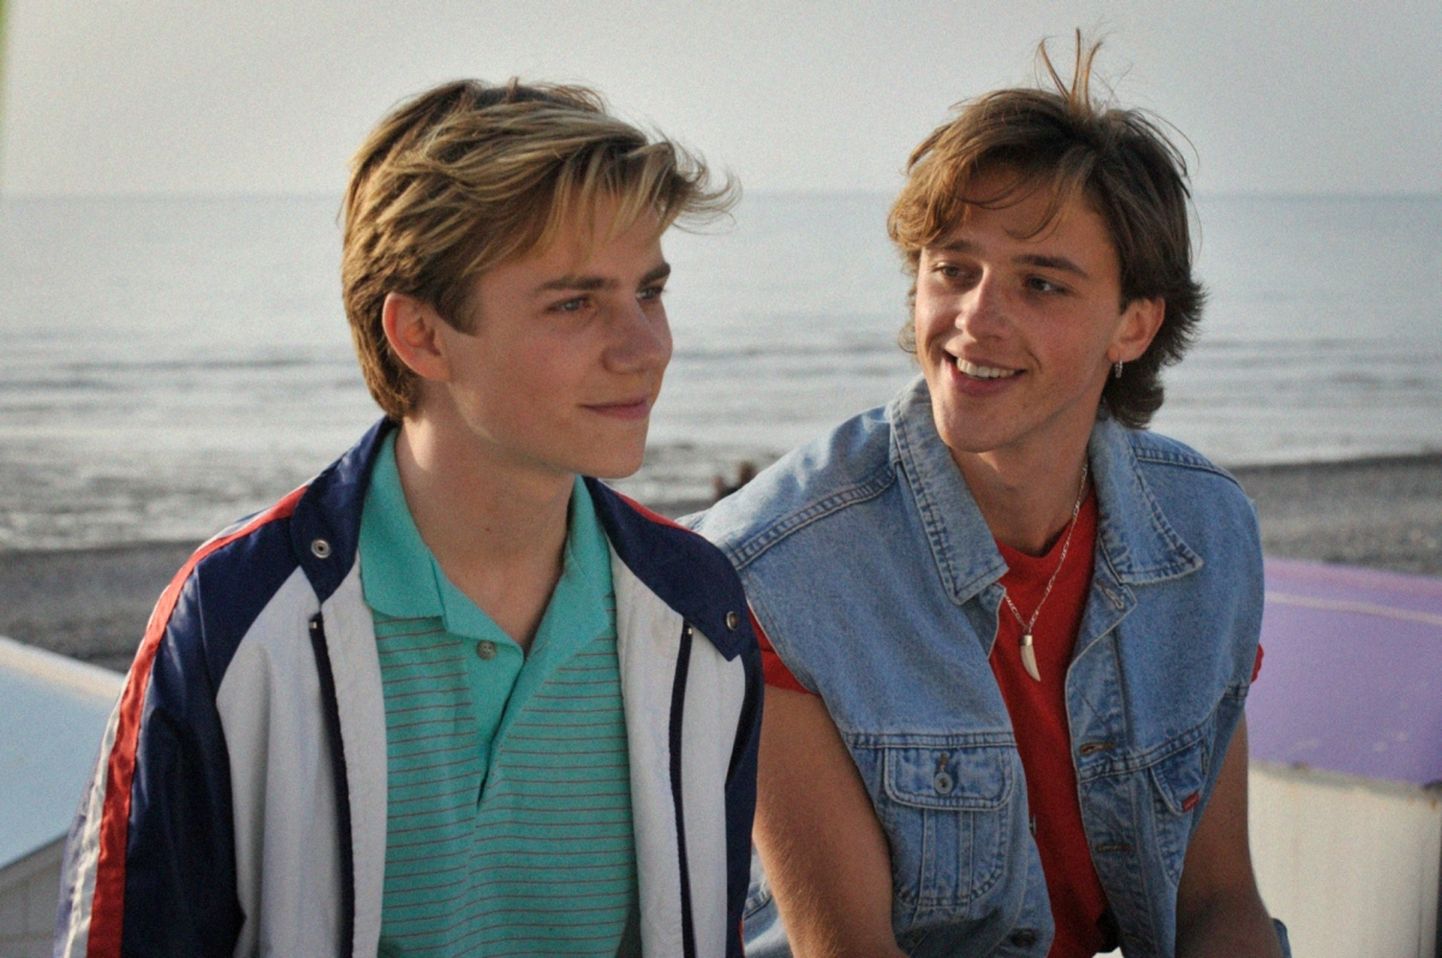 Кадр из французского фильма "Лето 85" об взаимоотношениях двух молодых людей.